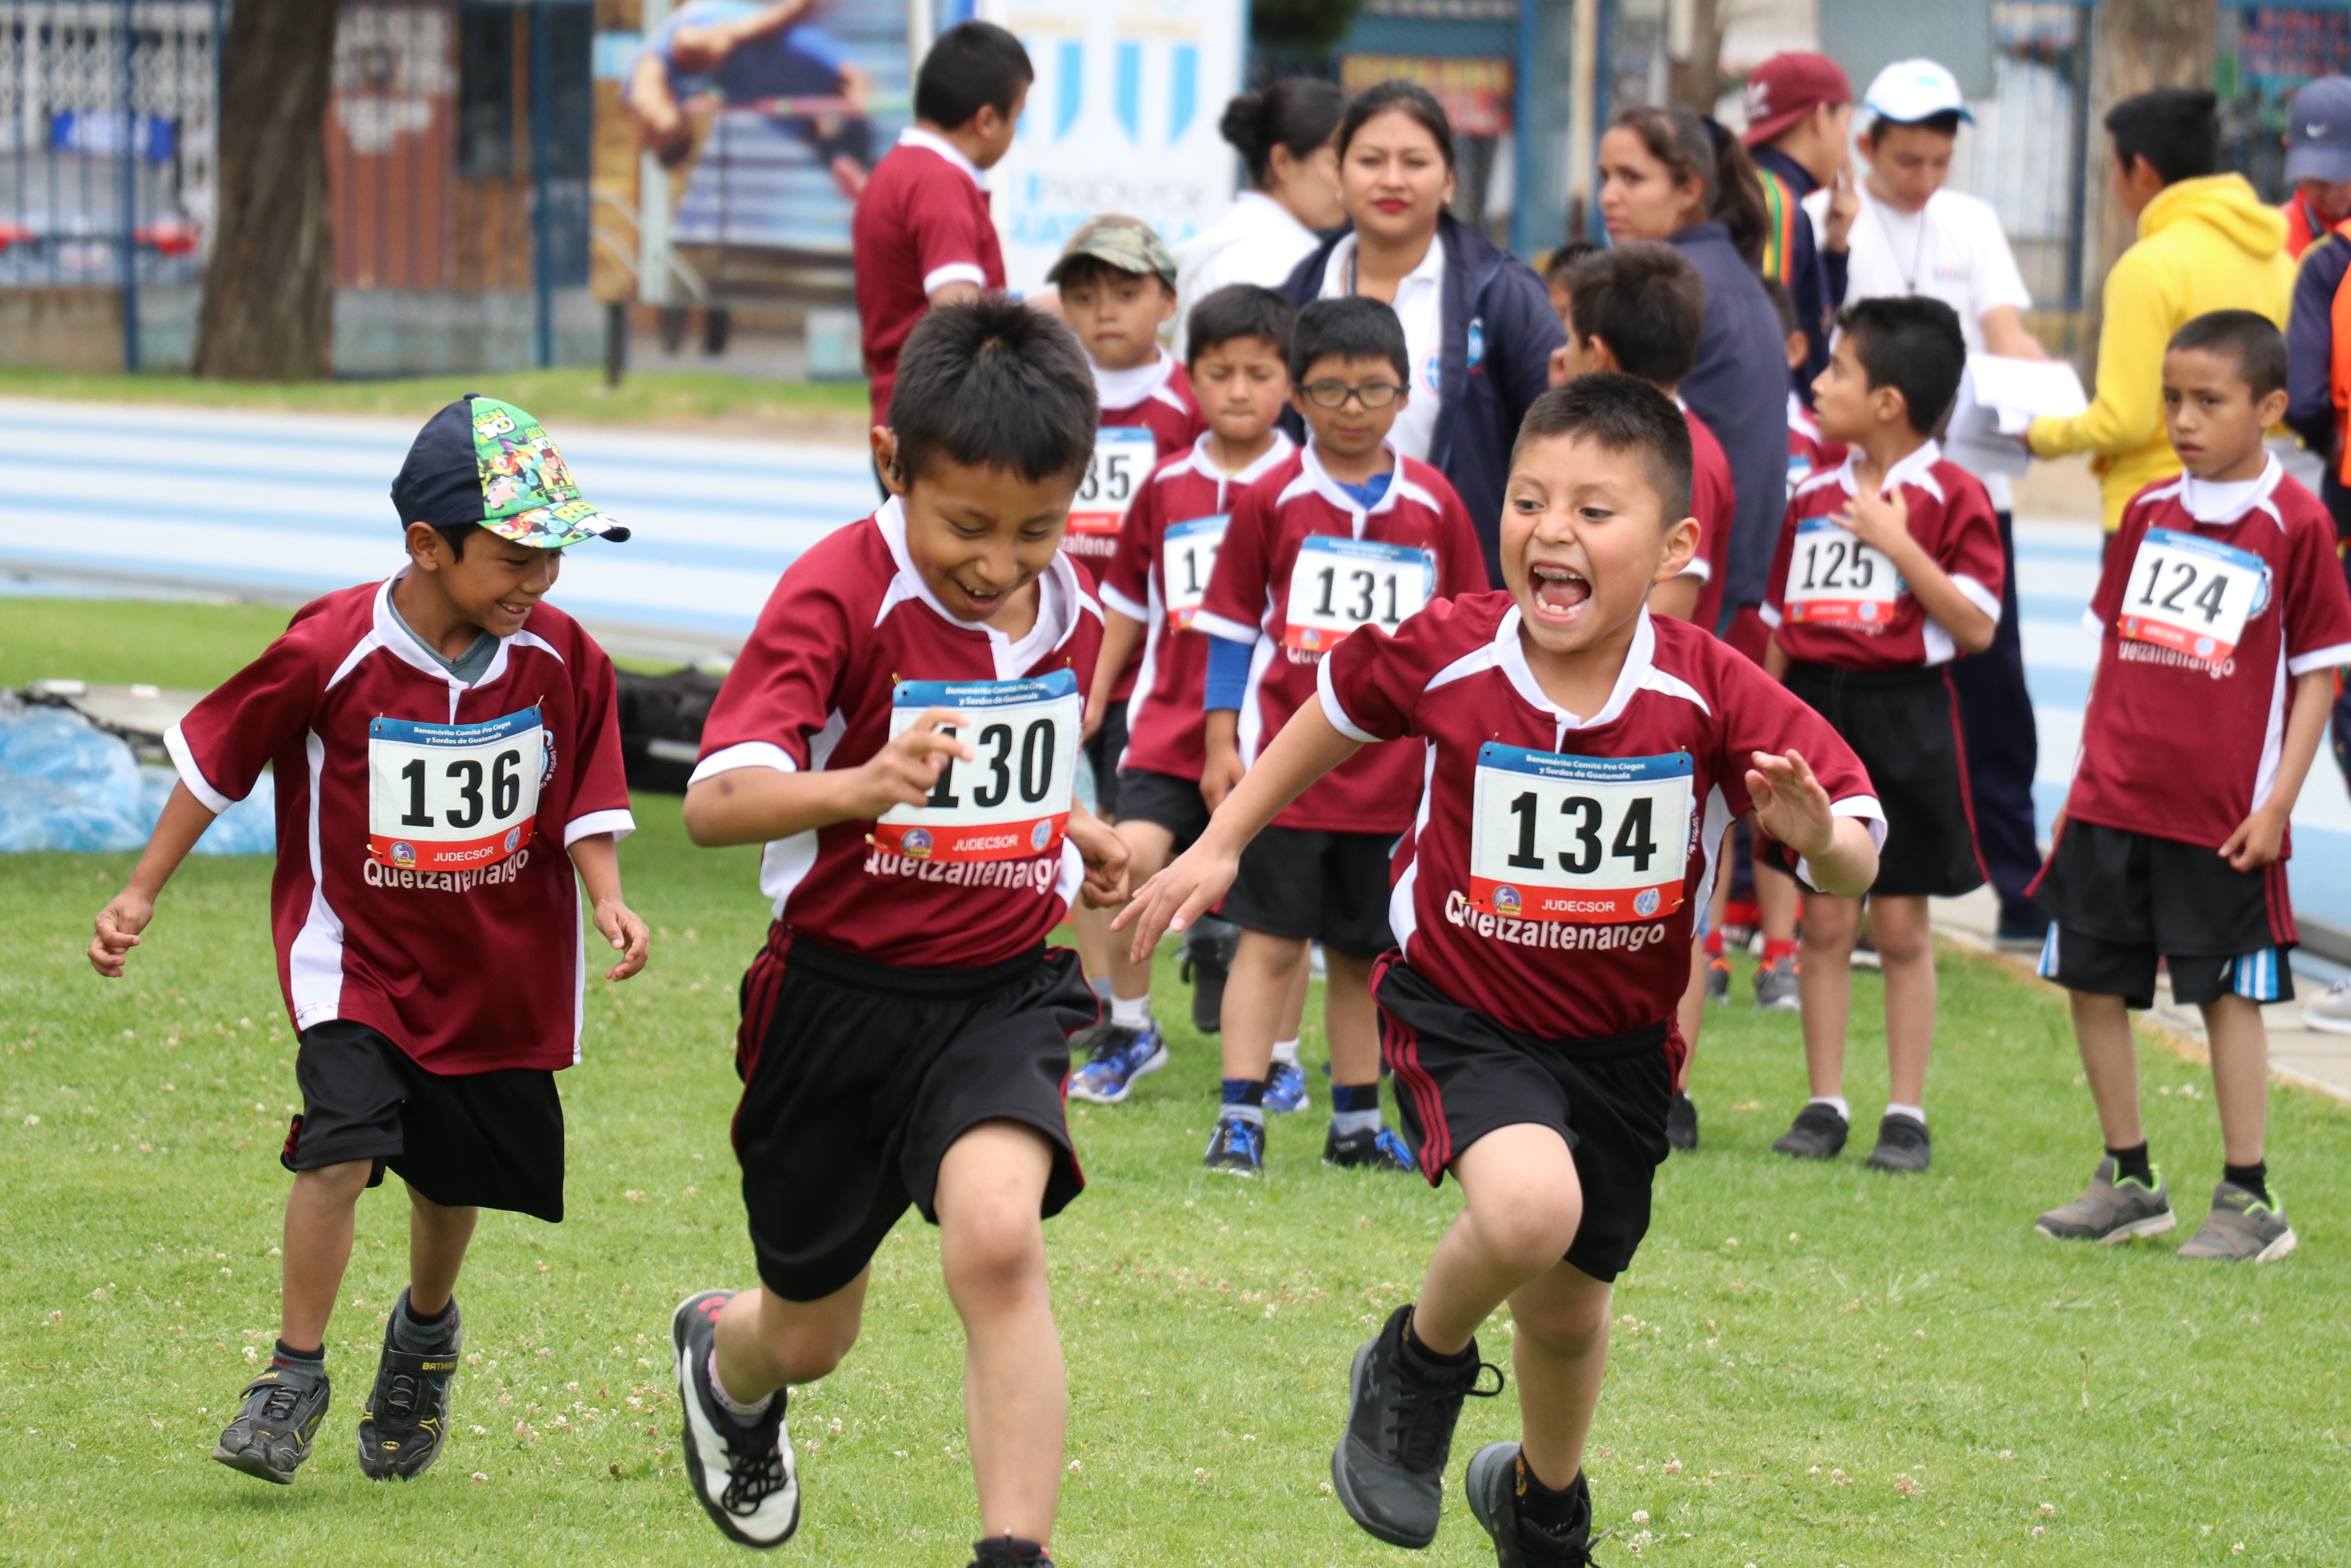 Los niño mostraron su alegría al participar en las competencias de atletismo. (Foto Prensa Libre: Raúl Juárez)